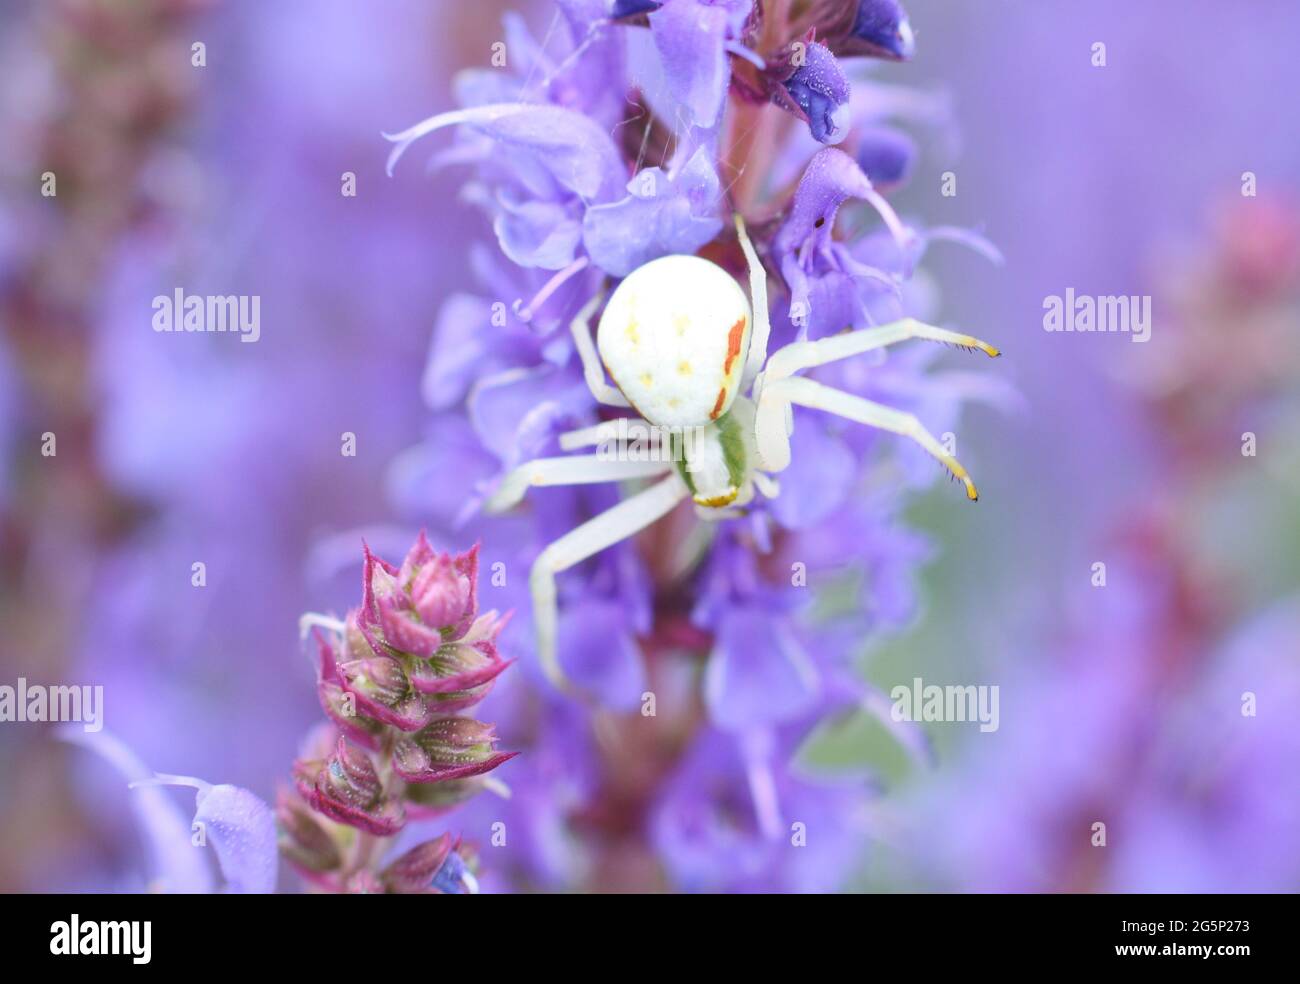 Eine kleine weiße Blütenkrabbenspinne (Misumena vatia) wartet darauf, eine Biene auf blau-violetten Salvia nemorosa-Blüten zu fangen Stockfoto